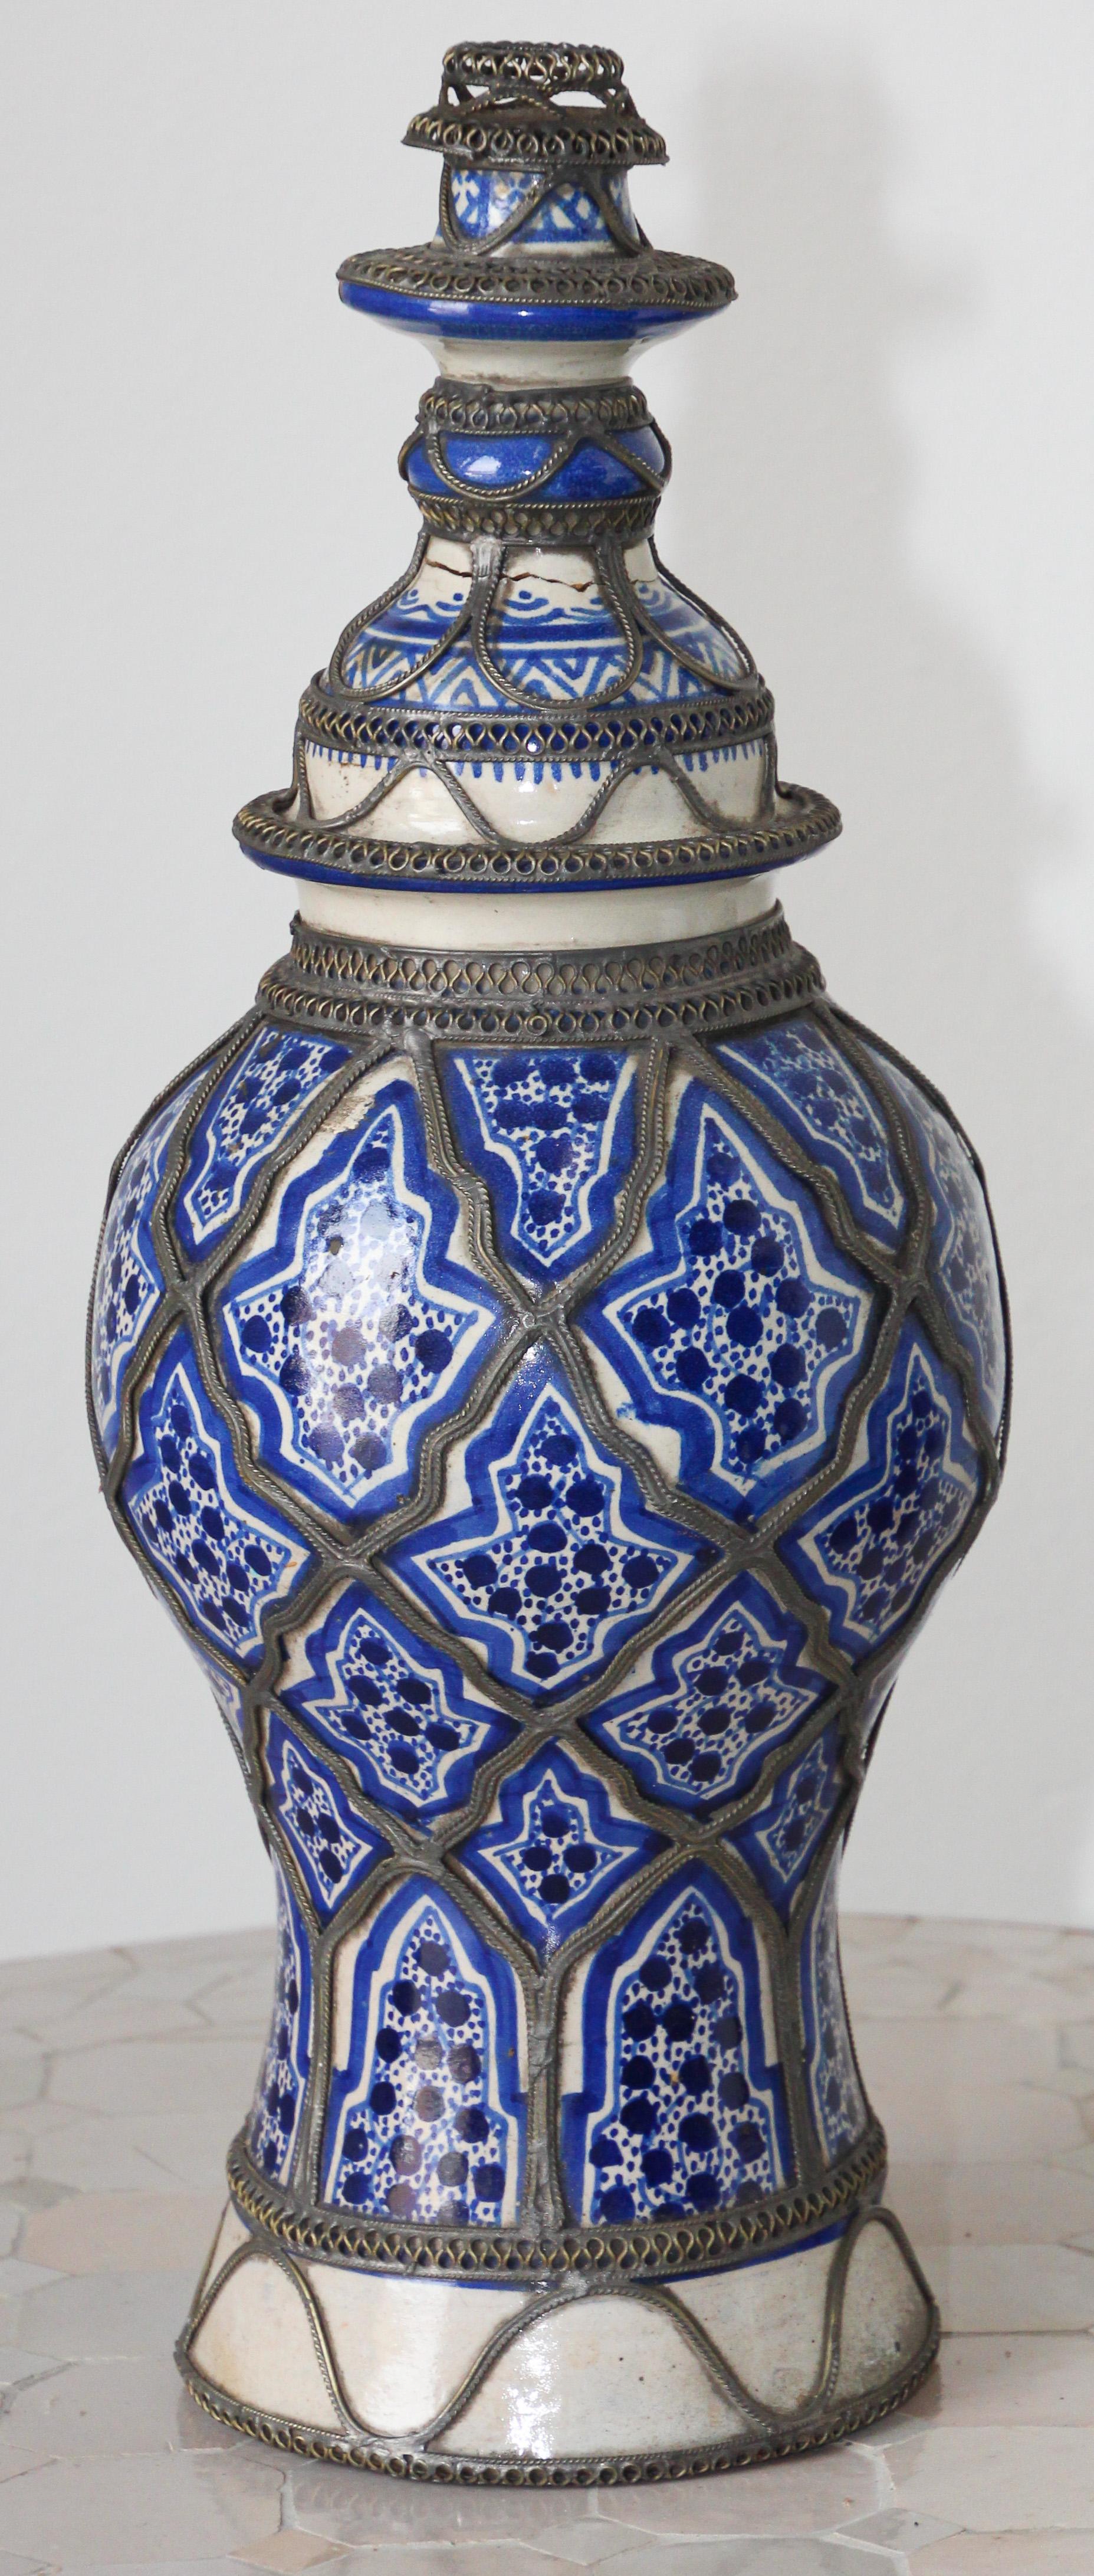 Fabuleux bougeoir antique en céramique bleue et blanche de style mauresque fabriqué à la main.
 Orné d'un fin travail de nickel argenté filigrané.
Le chandelier avec la couleur blanche et bleue de la céramique est connu sous le nom de bleu de